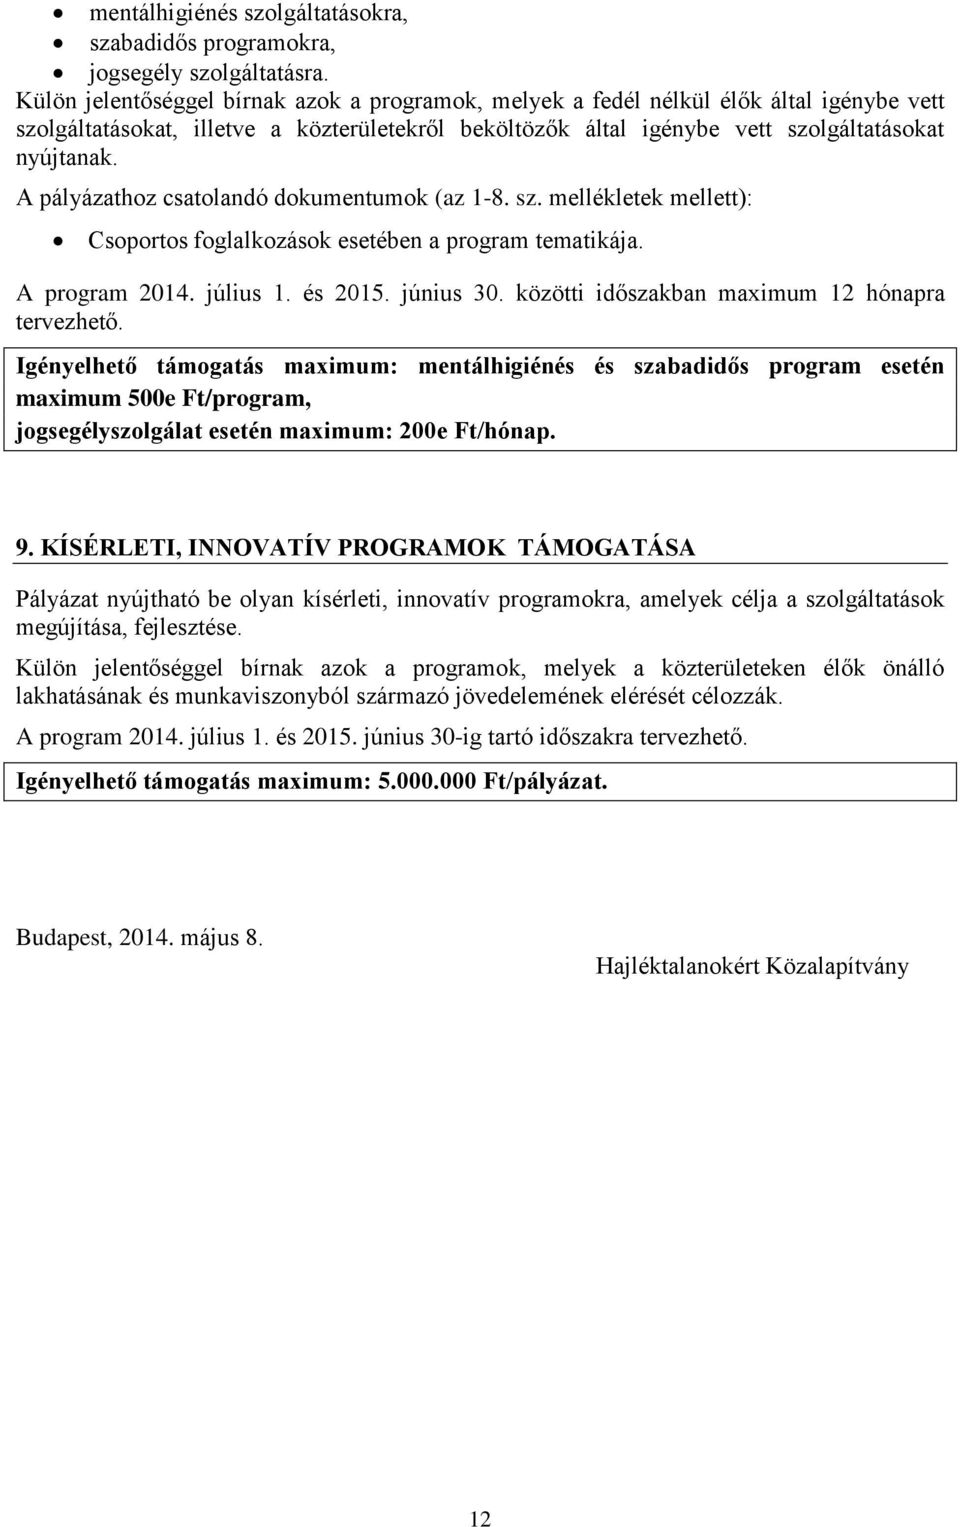 A pályázathoz csatolandó dokumentumok (az 1-8. sz. mellékletek mellett): Csoportos foglalkozások esetében a program tematikája. A program 2014. július 1. és 2015. június 30.